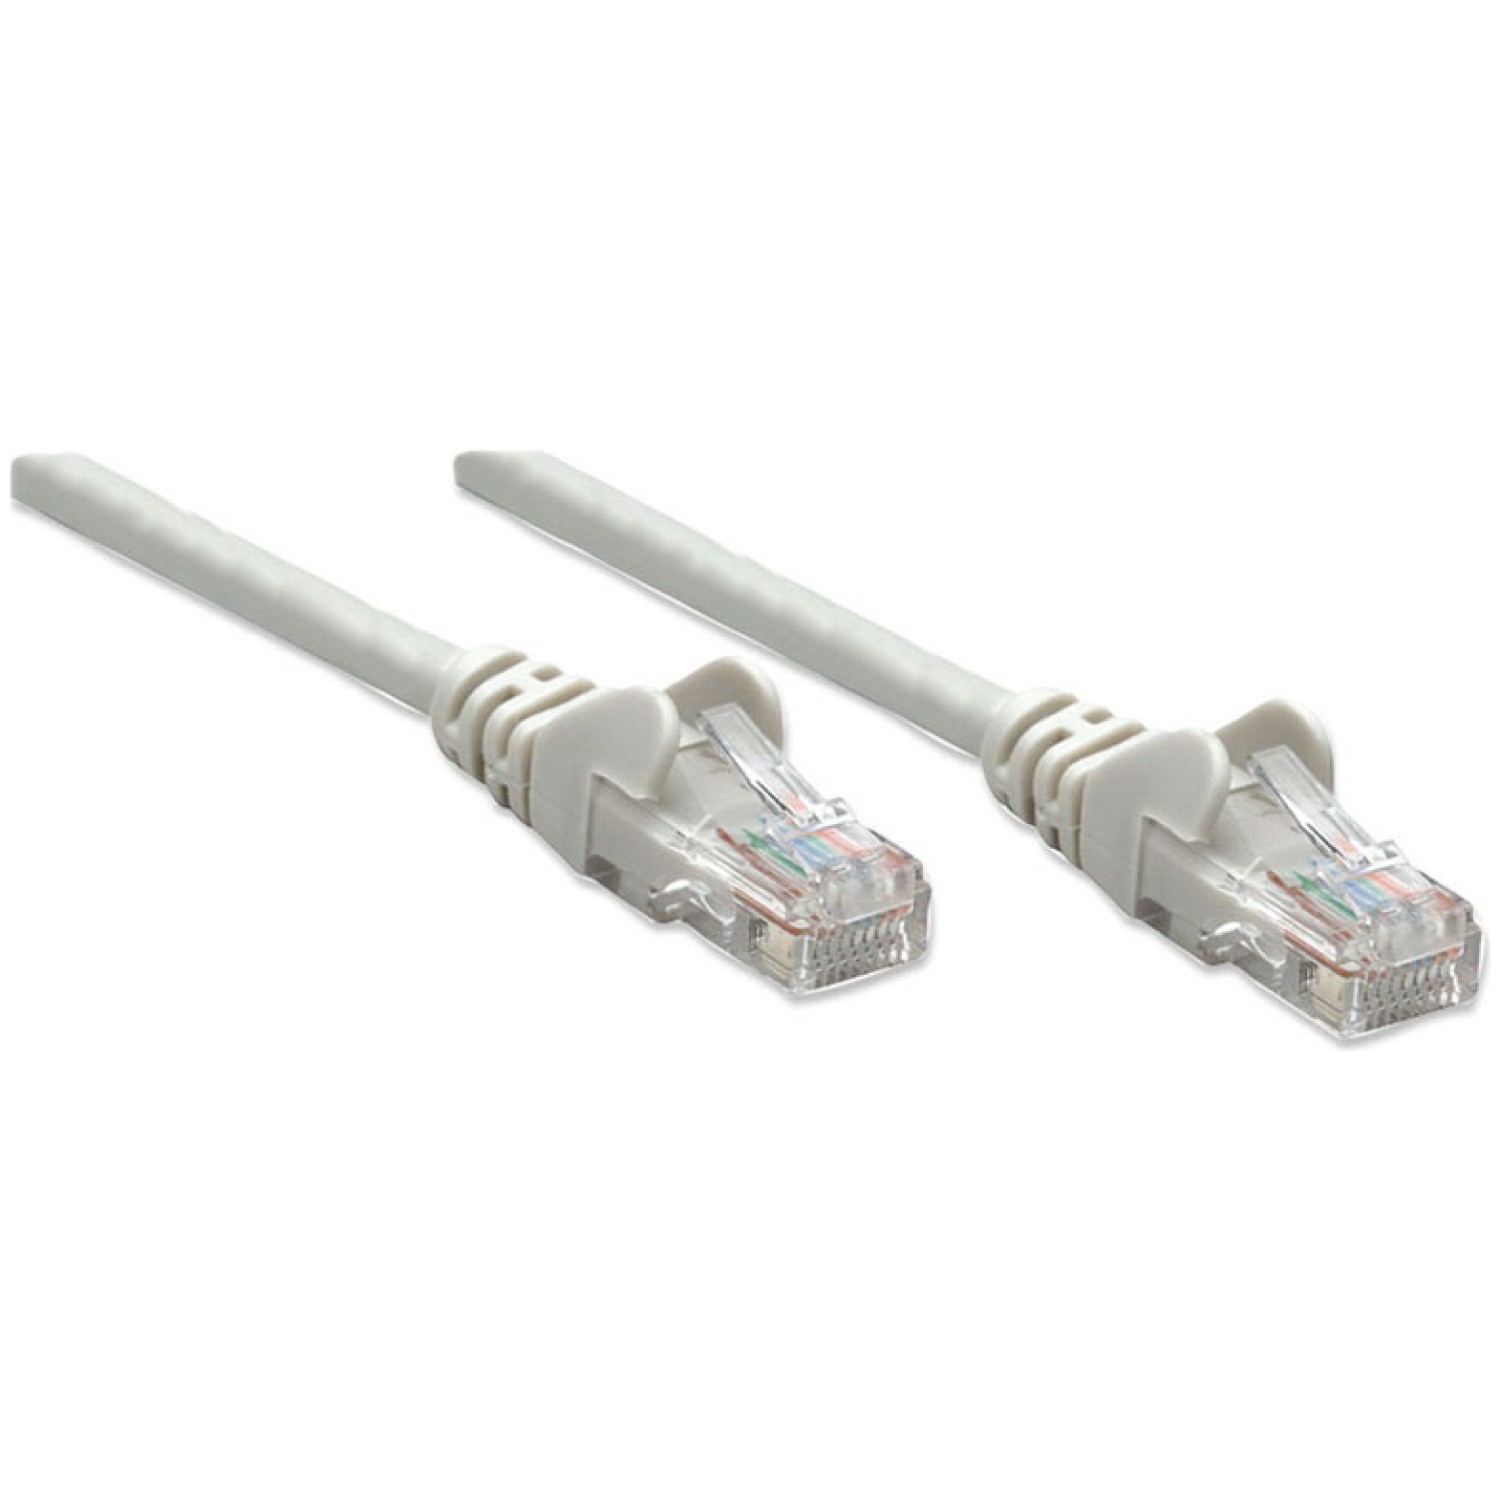 kategorija CAT5e. Omrežni kabel omogoča priročno in zanesljivo povezavo z ene omrežne naprave